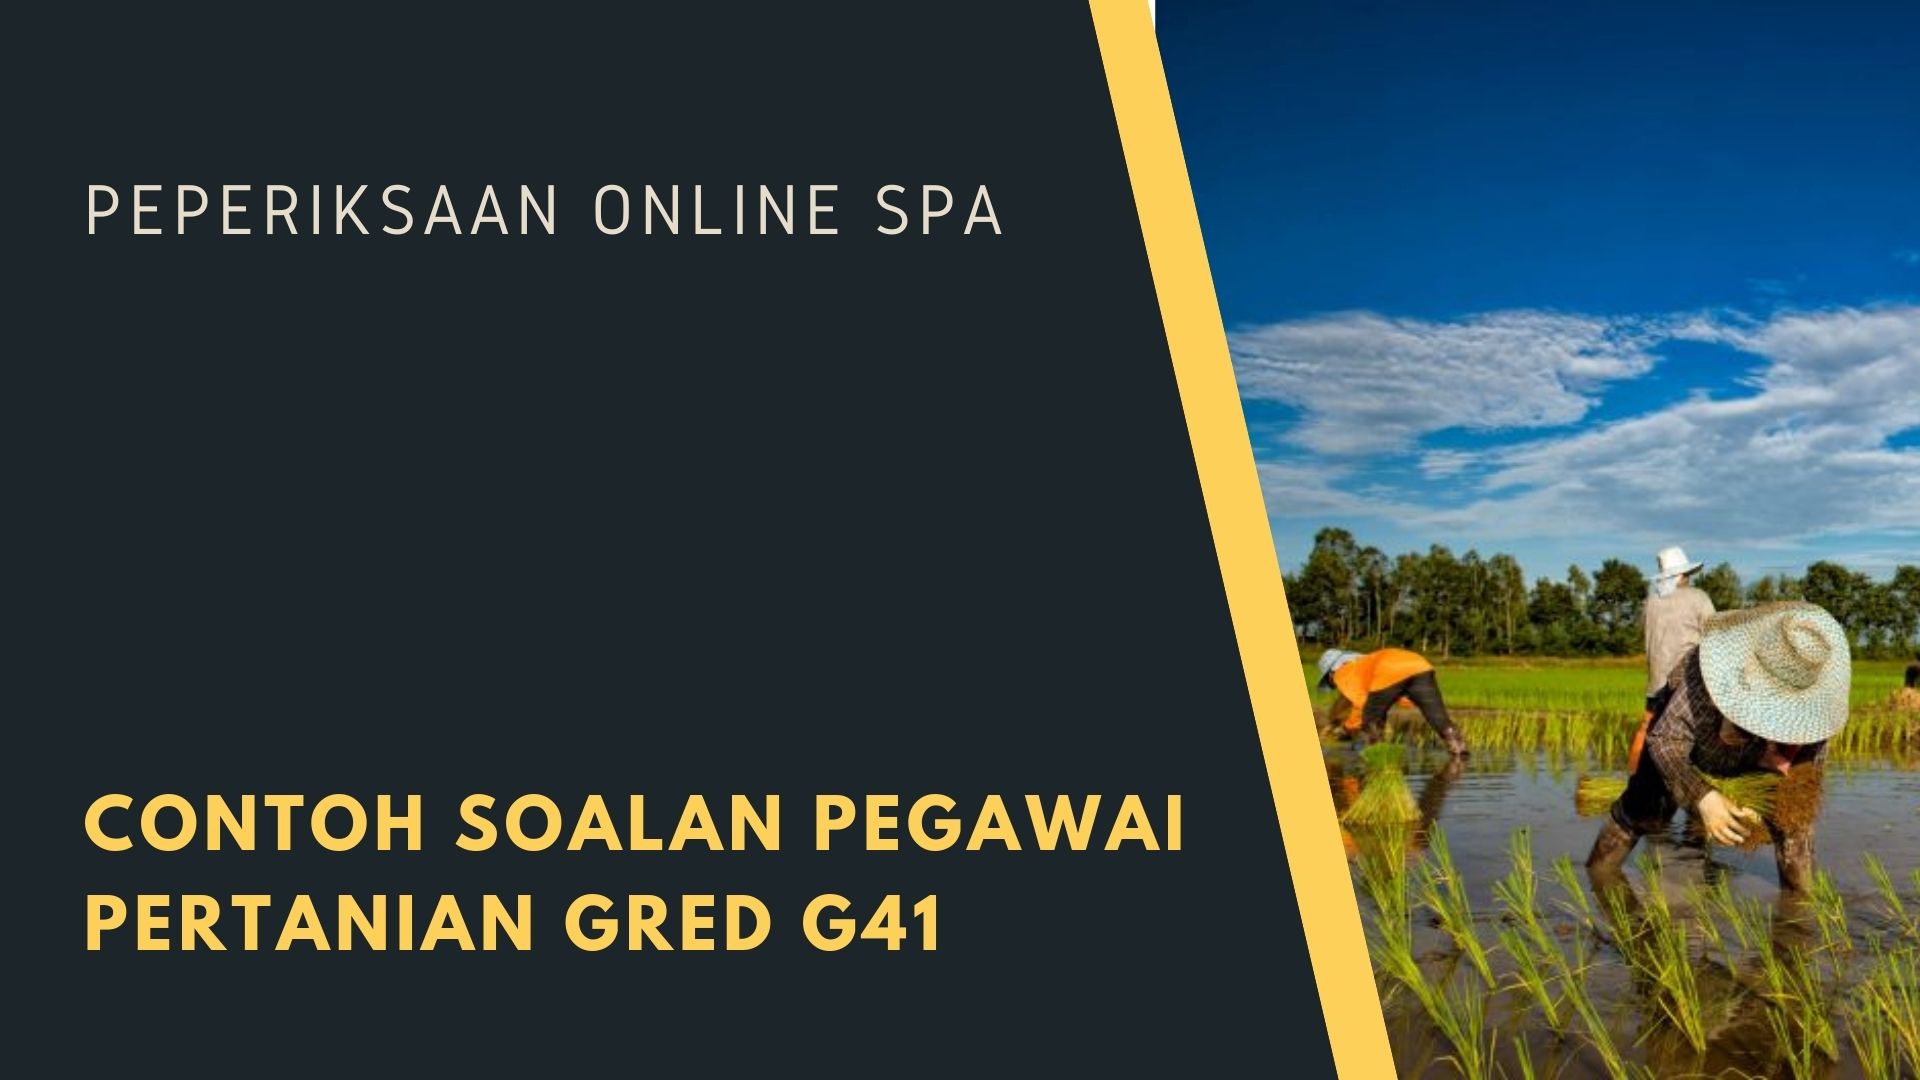 Contoh Soalan Pegawai Pertanian Gred G41 Tips Peperiksaan Online Spa Sokongan Kerjaya